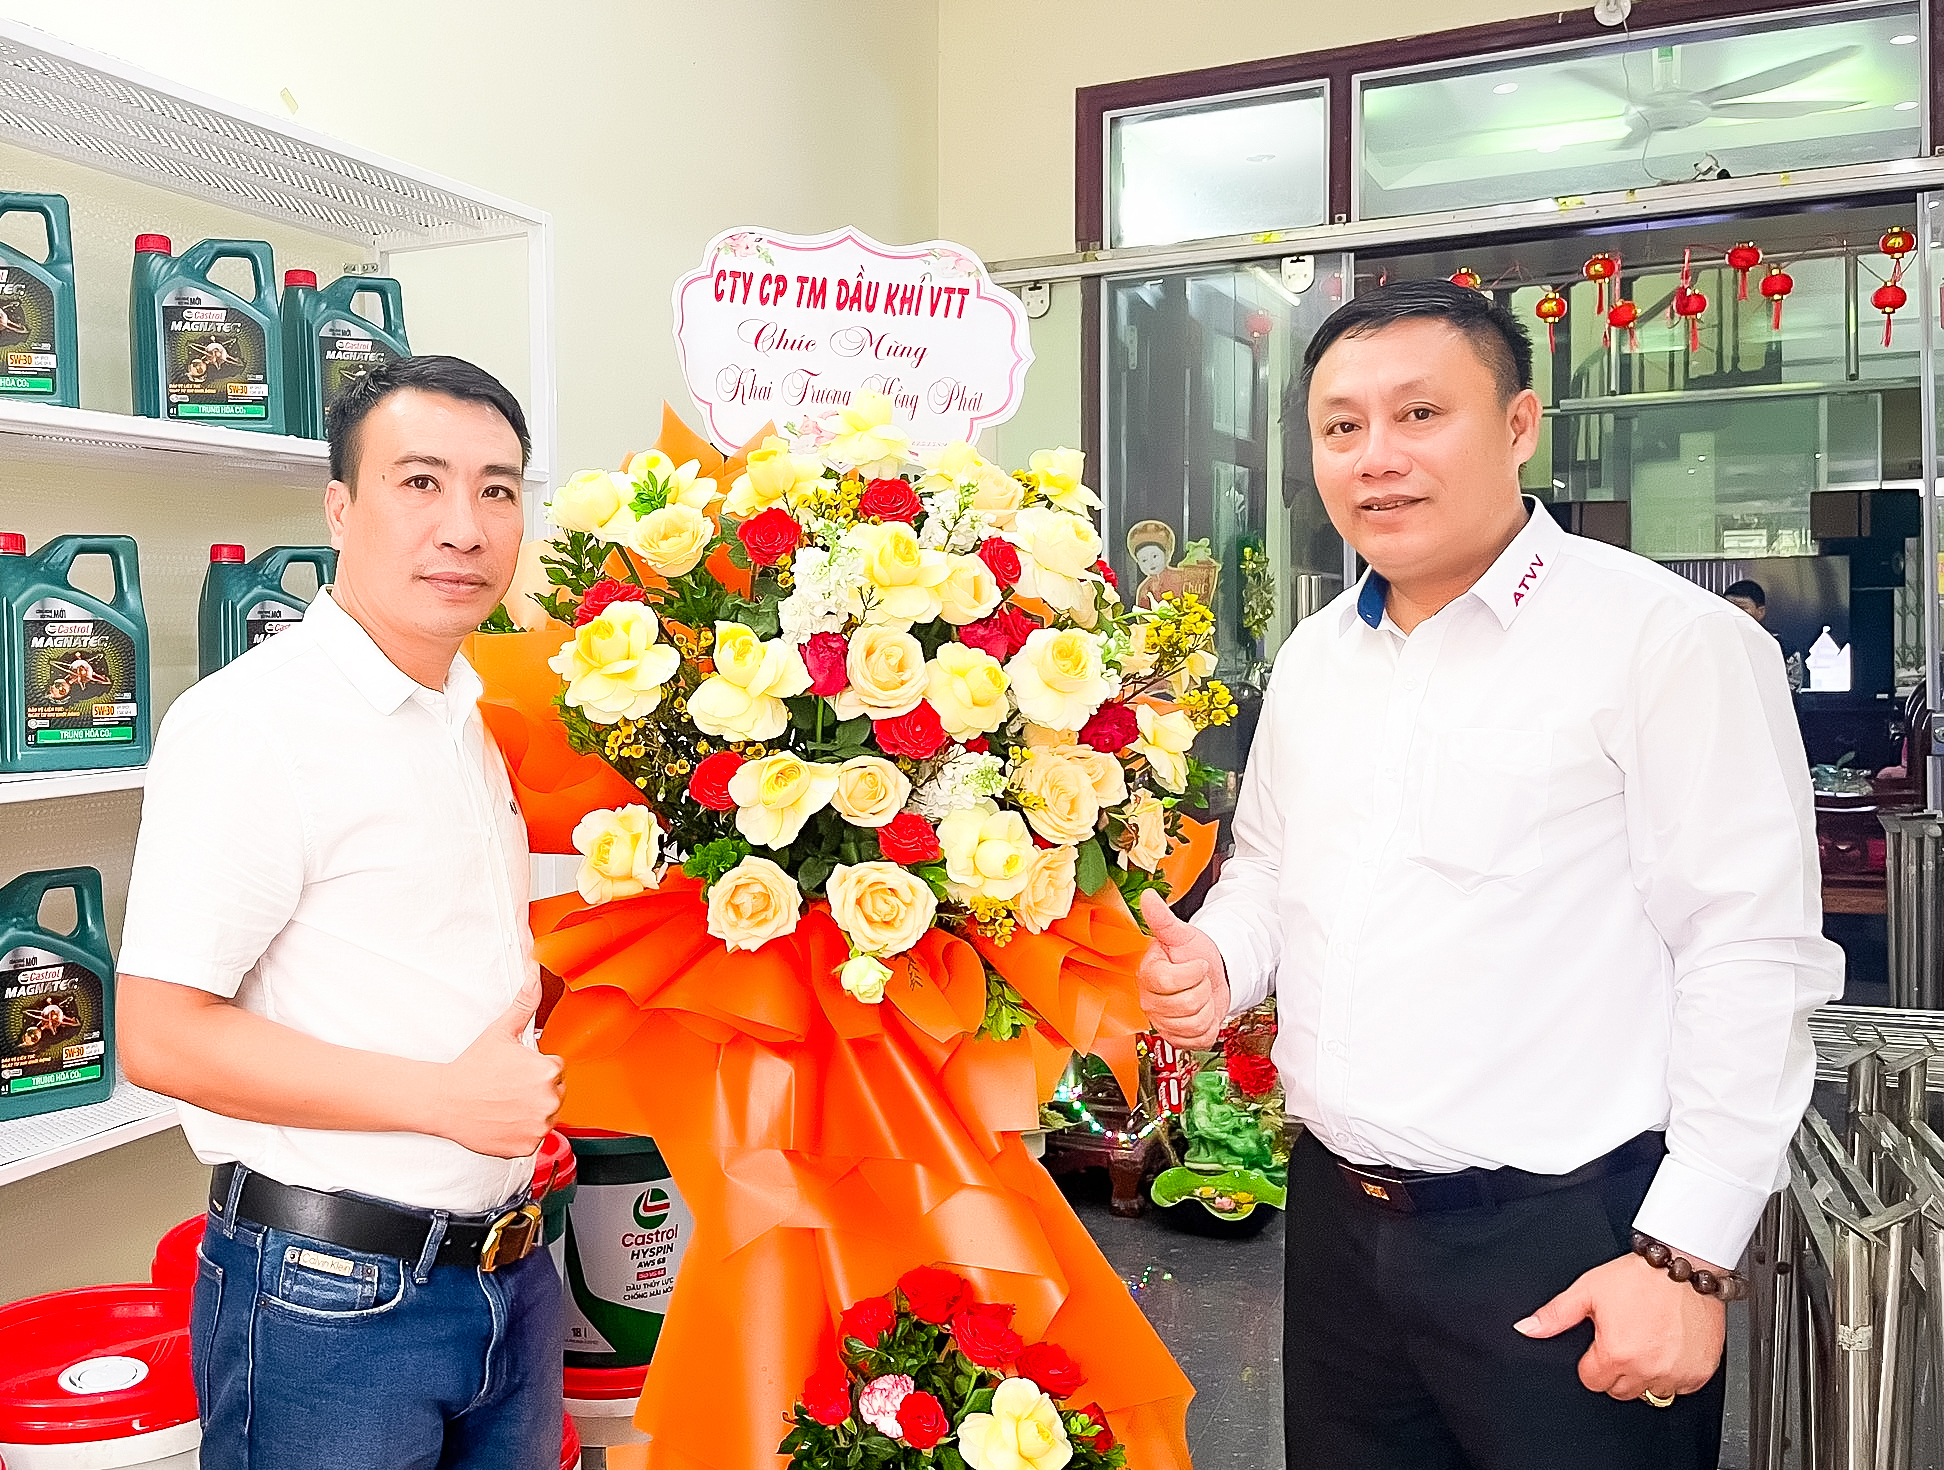 Tổng giám đốc VTT.JSC tặng hoa chúc mừng Công ty Dầu nhớt Duy Bình nhân ngày khai trương cửa hàng dầu nhớt tại TT Thị Trấn Diêm Điền, Thái Thụy, Thái Bình.